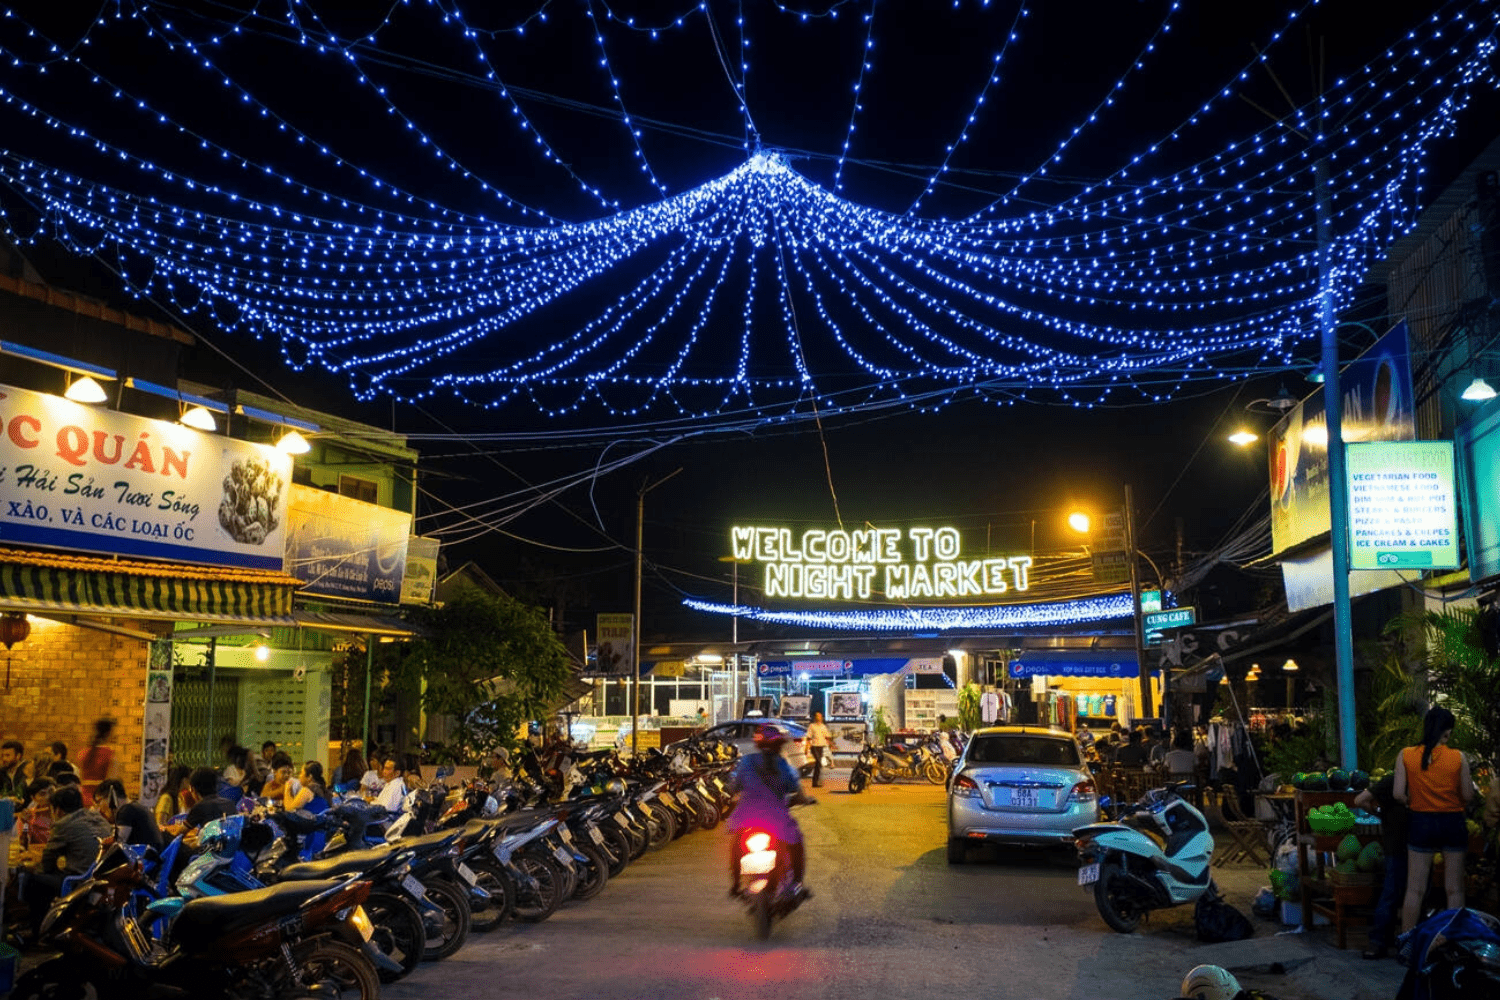 dinh-cau-night-market-vietnam